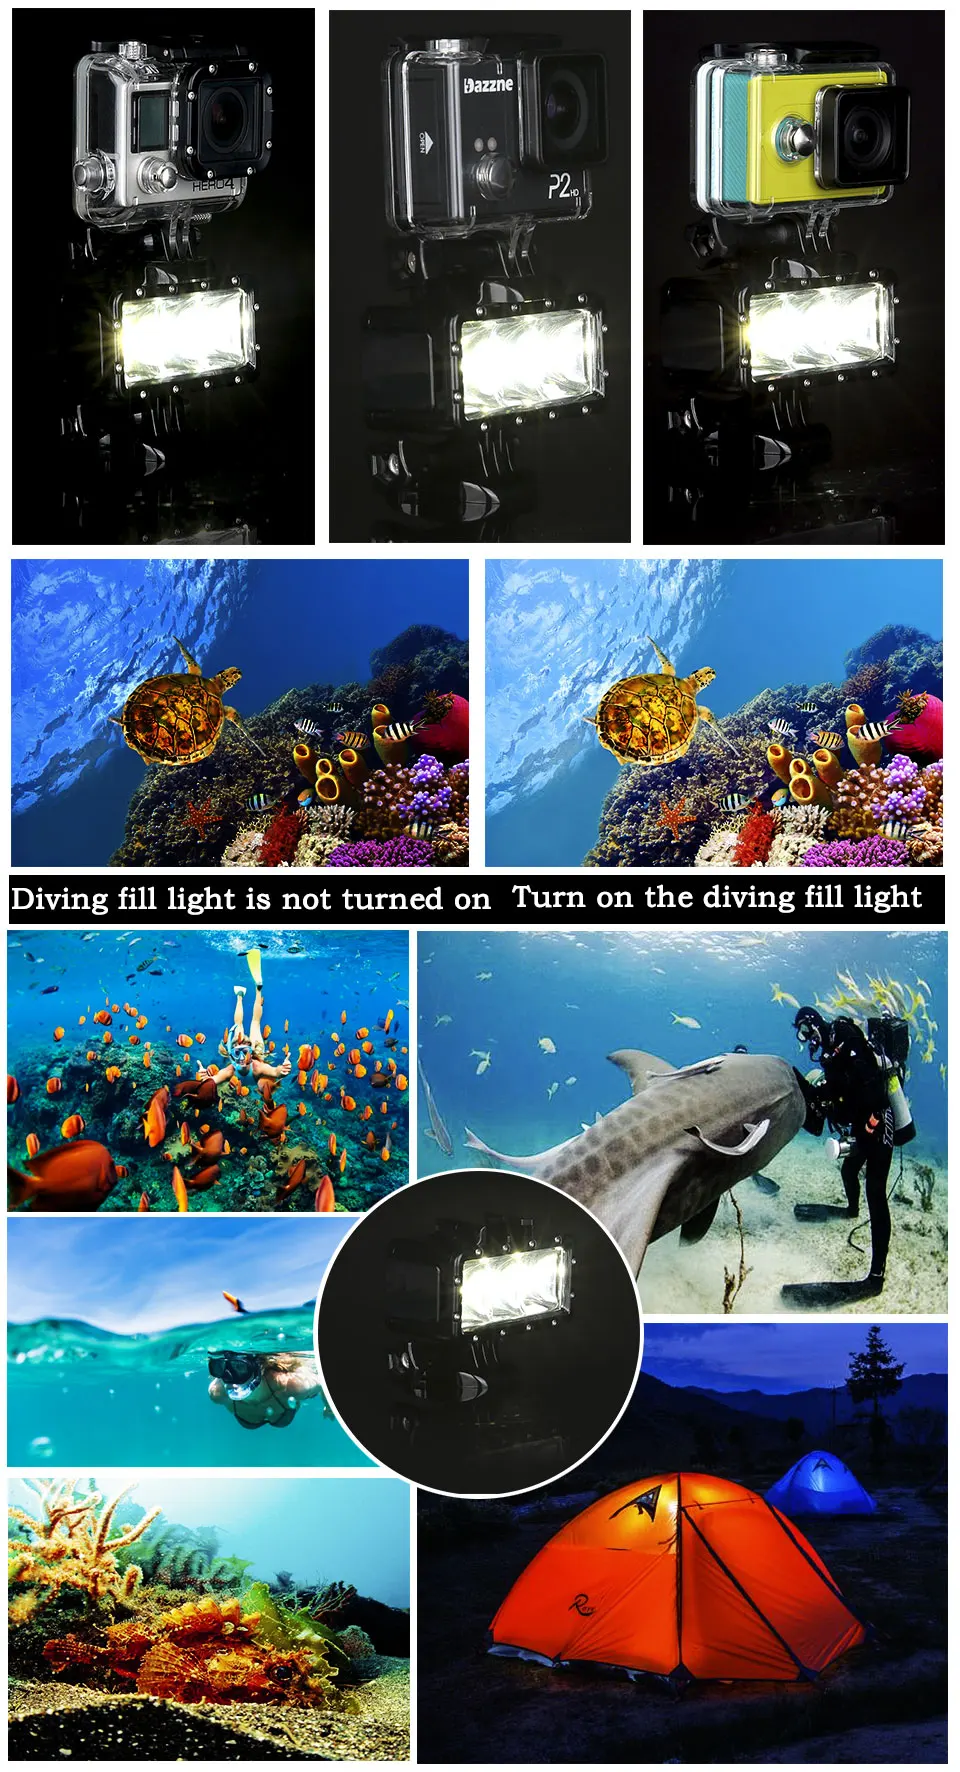 Orsda светодиодный светильник-Вспышка водонепроницаемый подводный заполняющий светильник Дайвинг видео светильник s Крепление для GoPro SJCAM SJ4000 H9 H9R xiaomi yi OR007